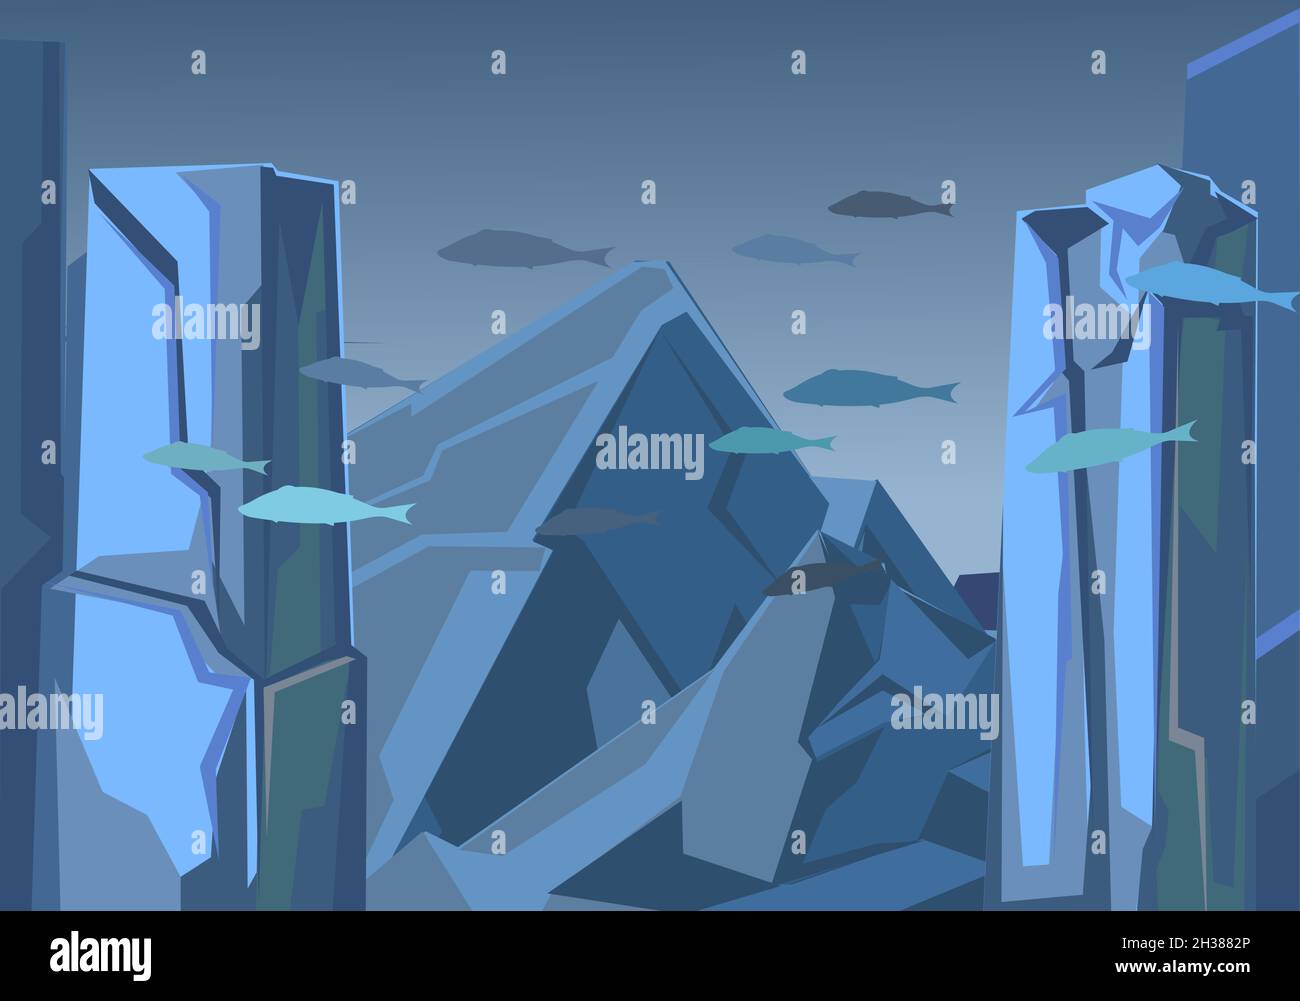 Tiefseelandschaft mit felsigen Klippen. Meeresboden. Unterwasserwelt von Fischen. Natürliche Landschaft. Illustration im Cartoon-Stil flache Design. Vektor Stock Vektor